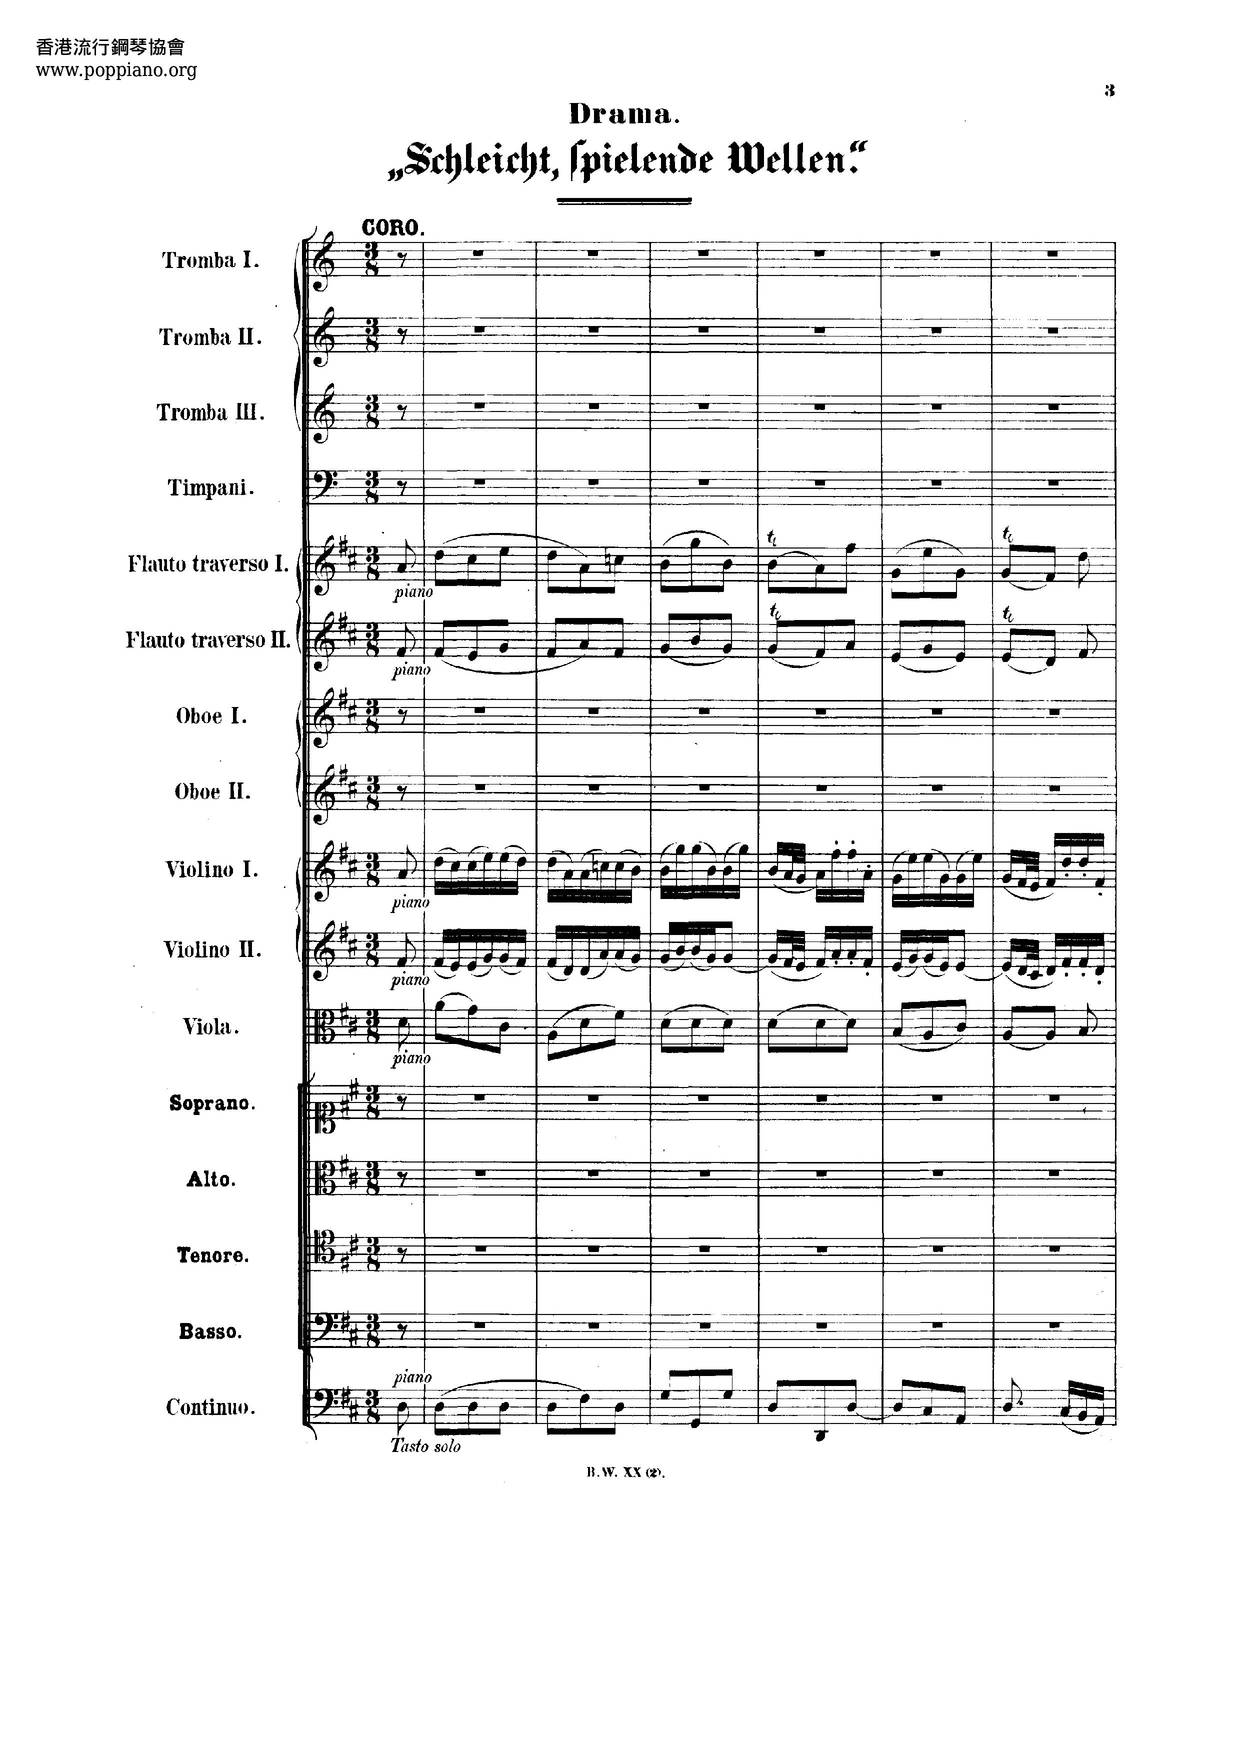 Schleicht, Spielende Wellen, BWV 206琴譜